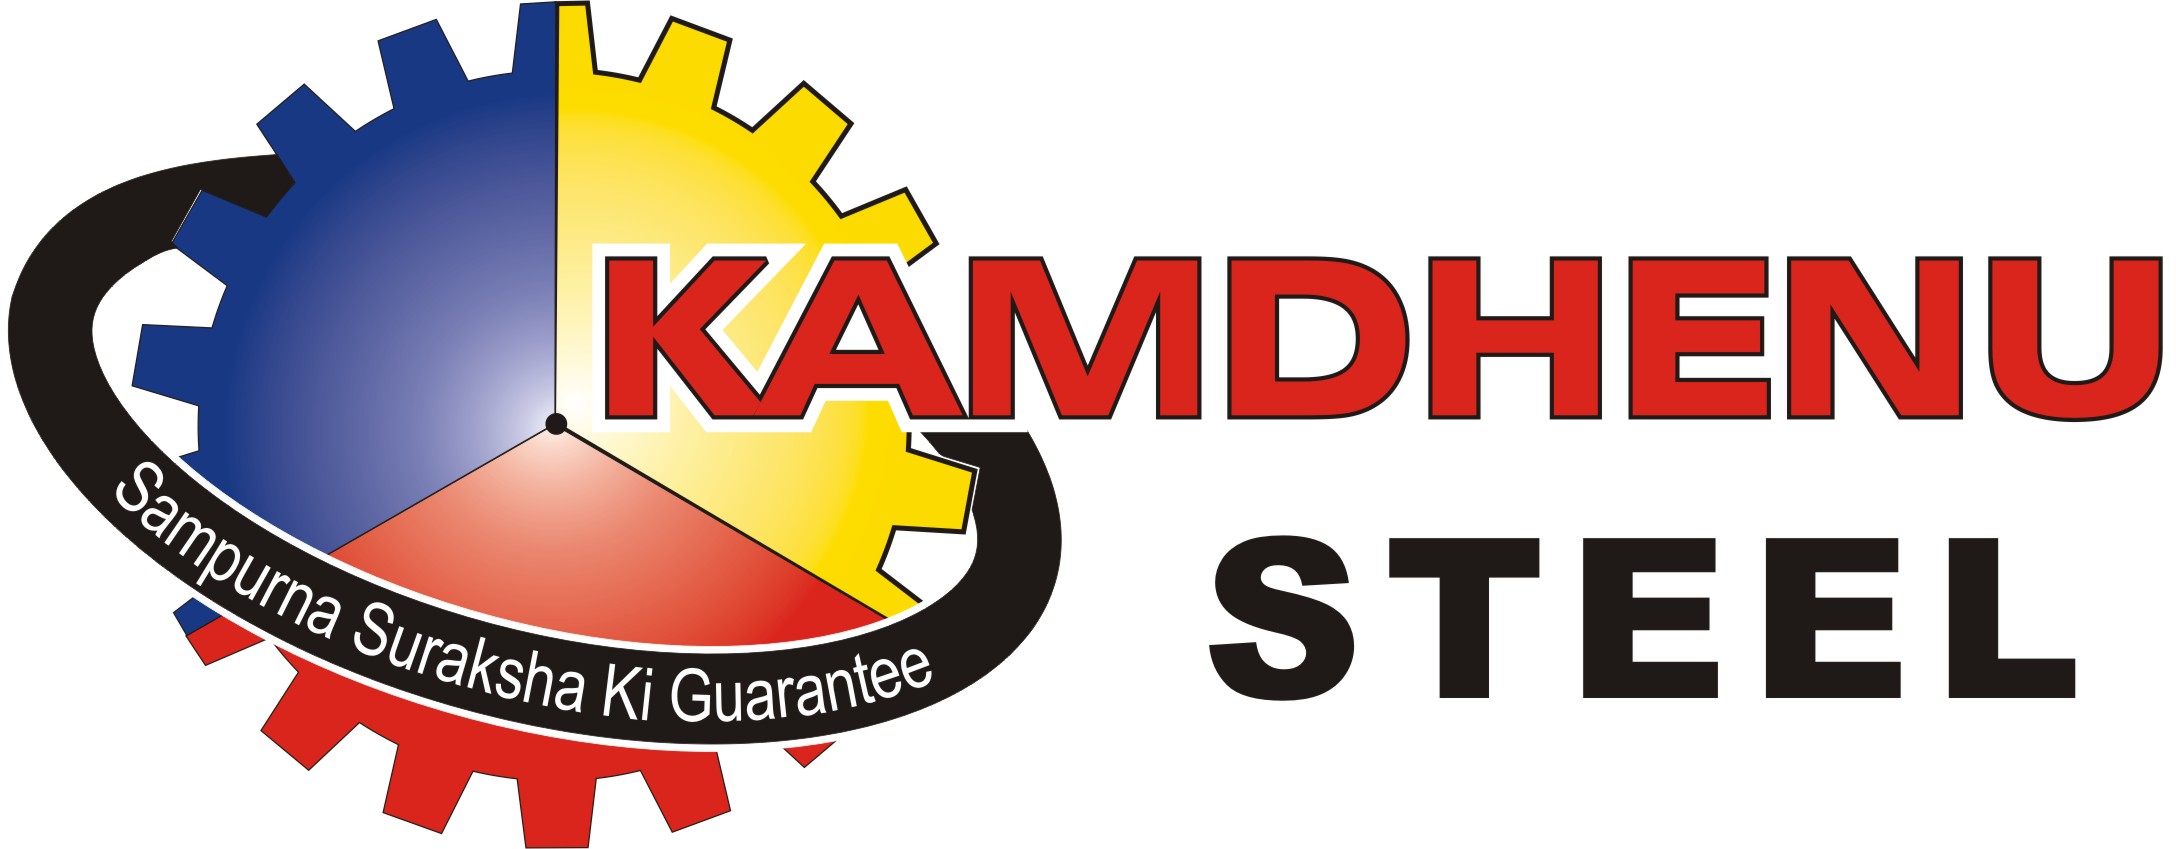 Kamdhenu Ltd Delivered Strong Performance in Q3